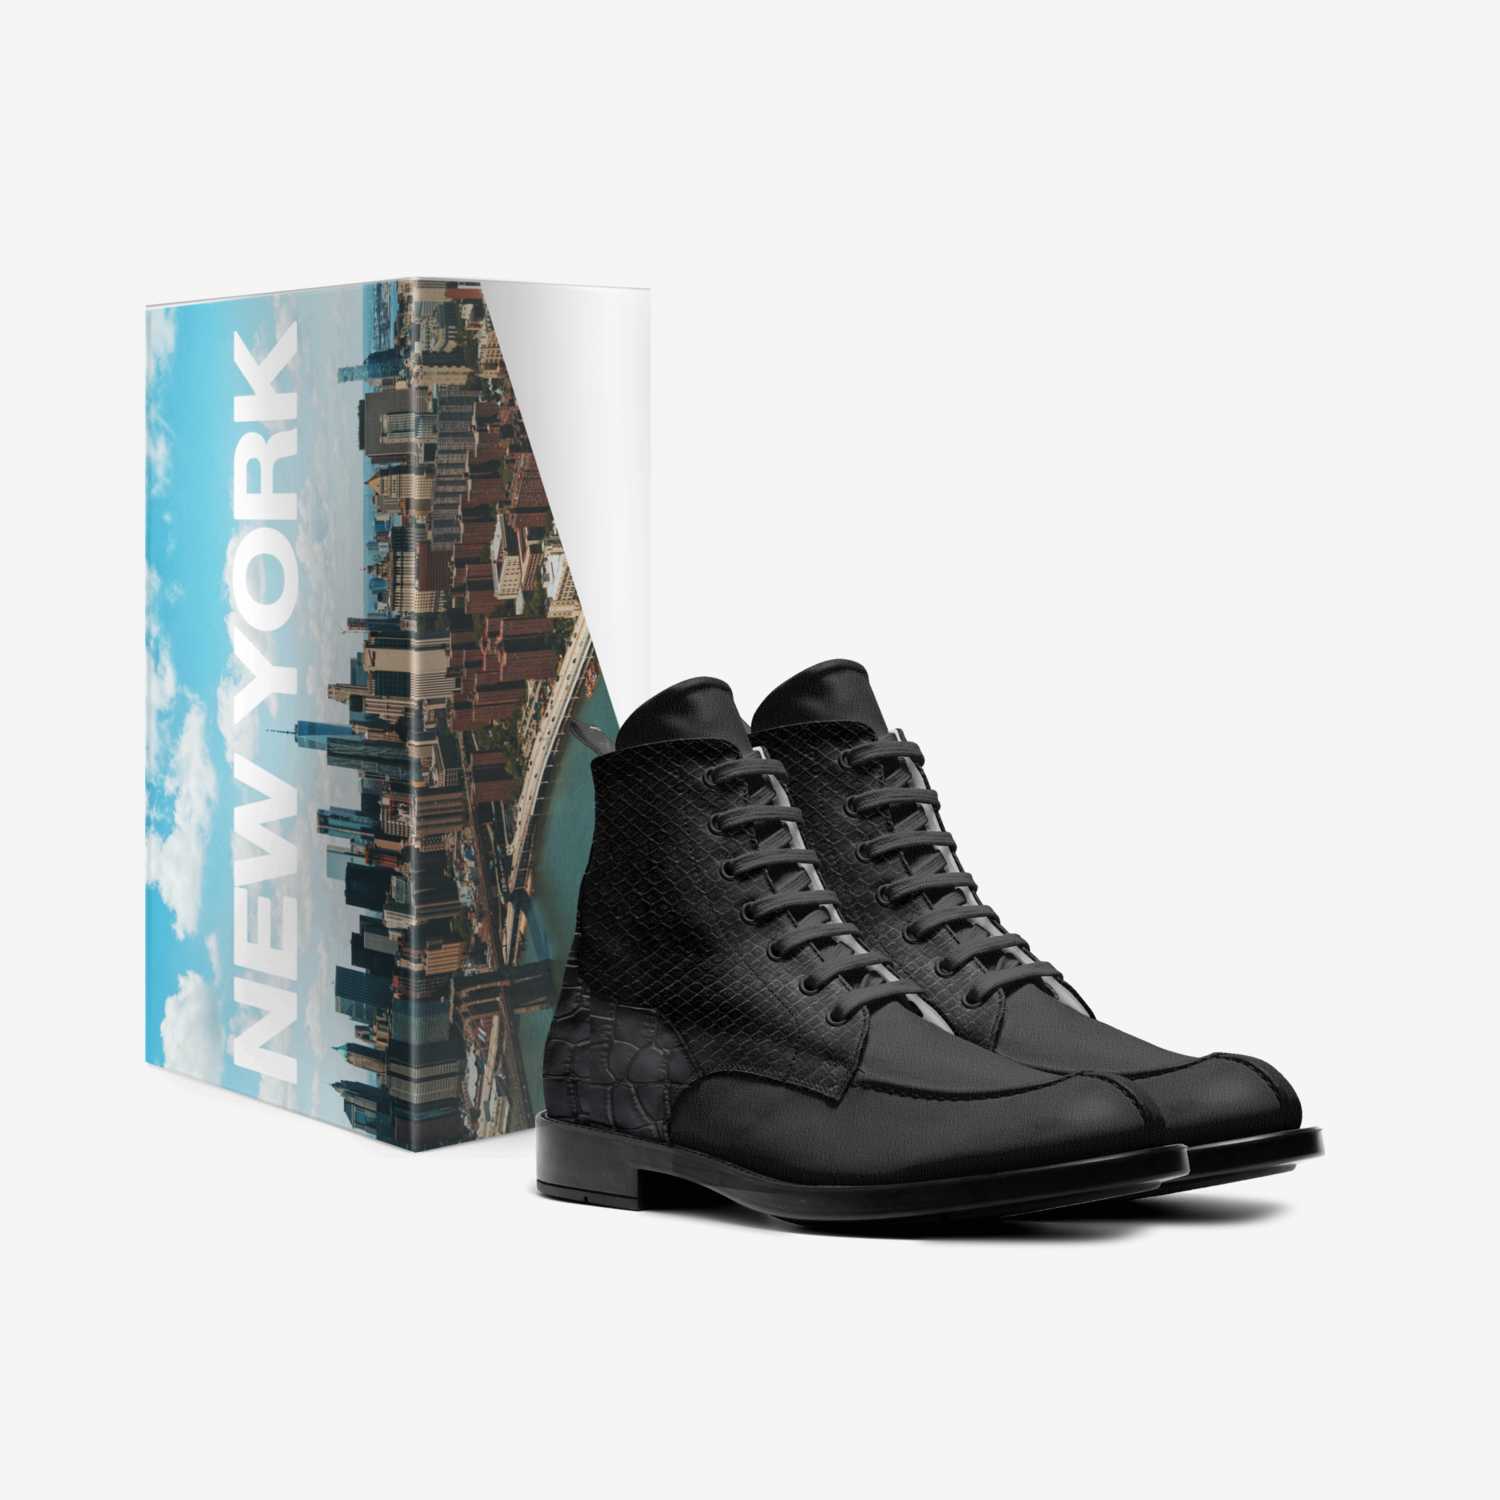 Mr. Rickey custom made in Italy shoes by Theodora Howard | Box view